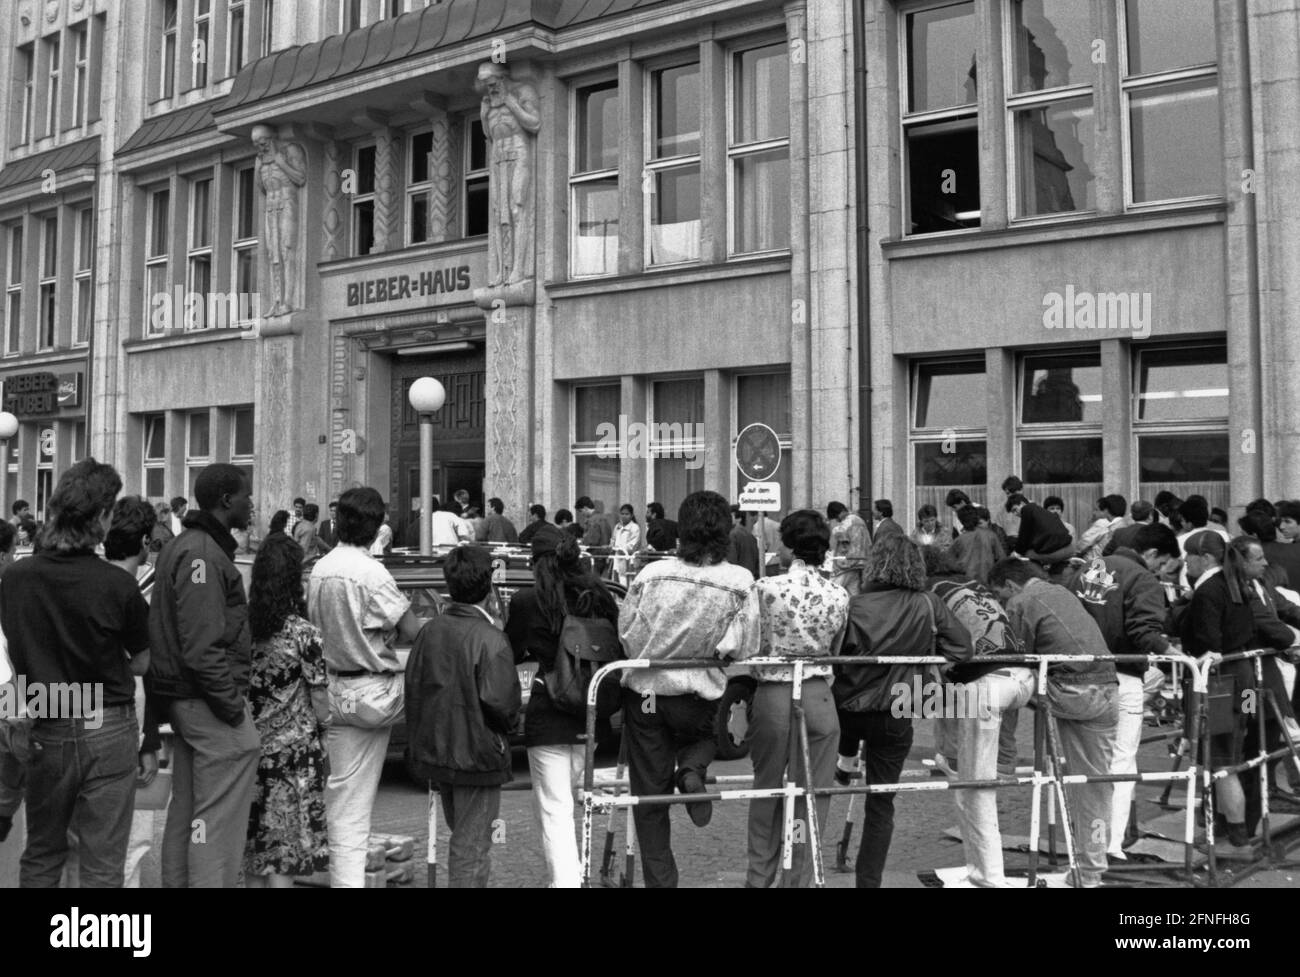 Wartende Asylbewerber vor dem Hamburger Bieberhaus, dem Sitz der Ausländerbehörde. [Automatisierte Übersetzung] Stockfoto